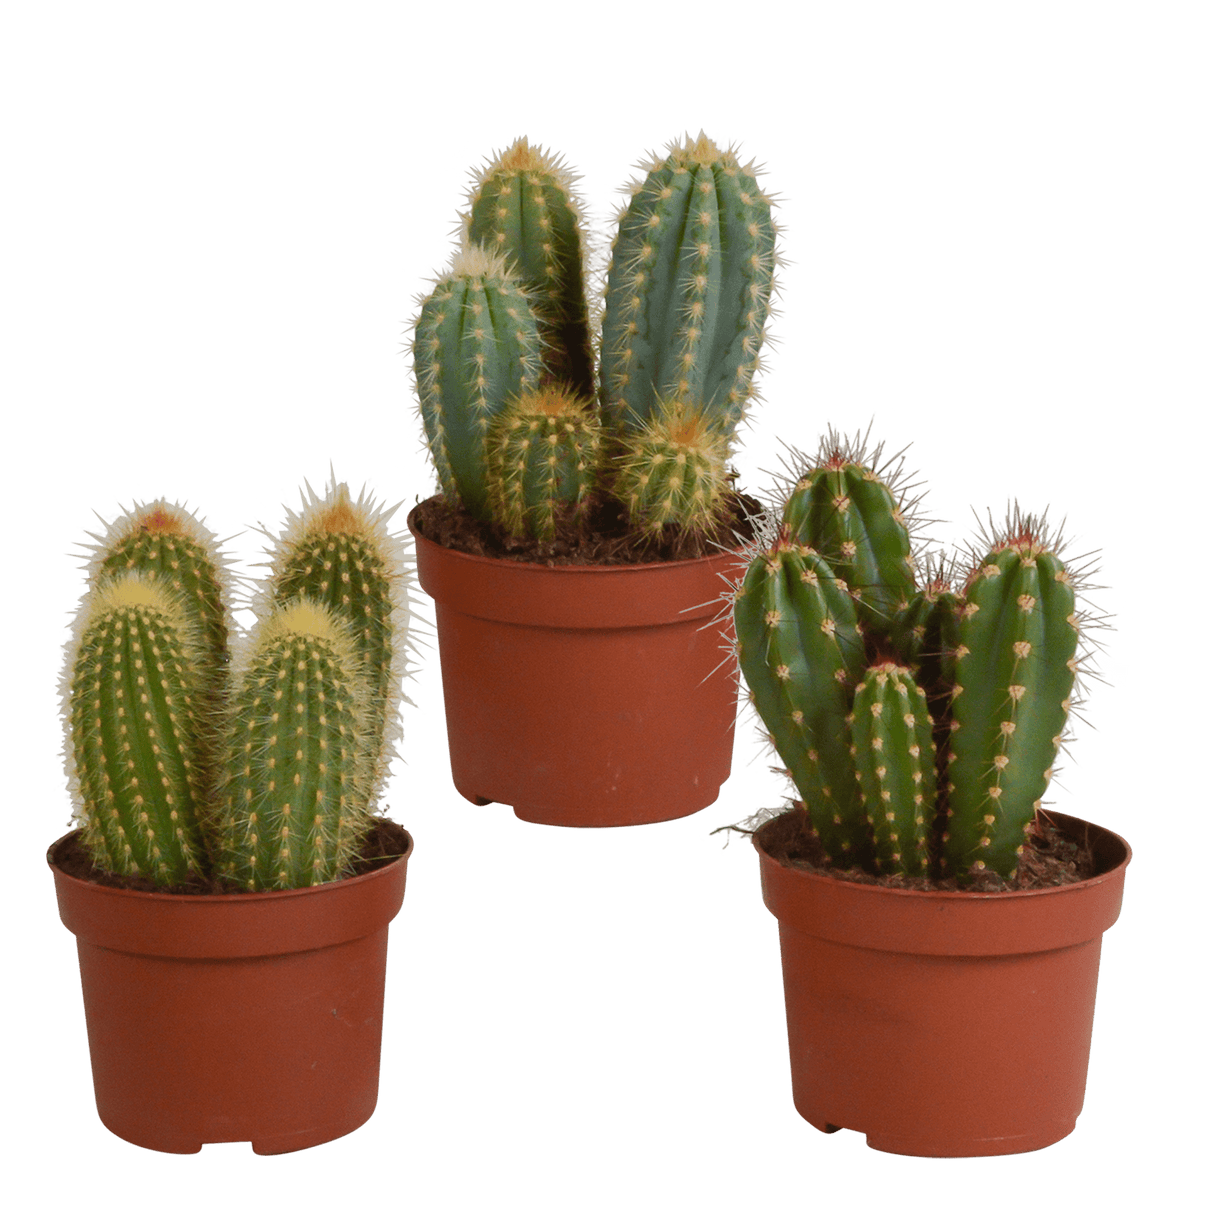 Livraison plante - Cactus, box de 3 plantes - h15cm, Ø10,5cm - cactus d'intérieur